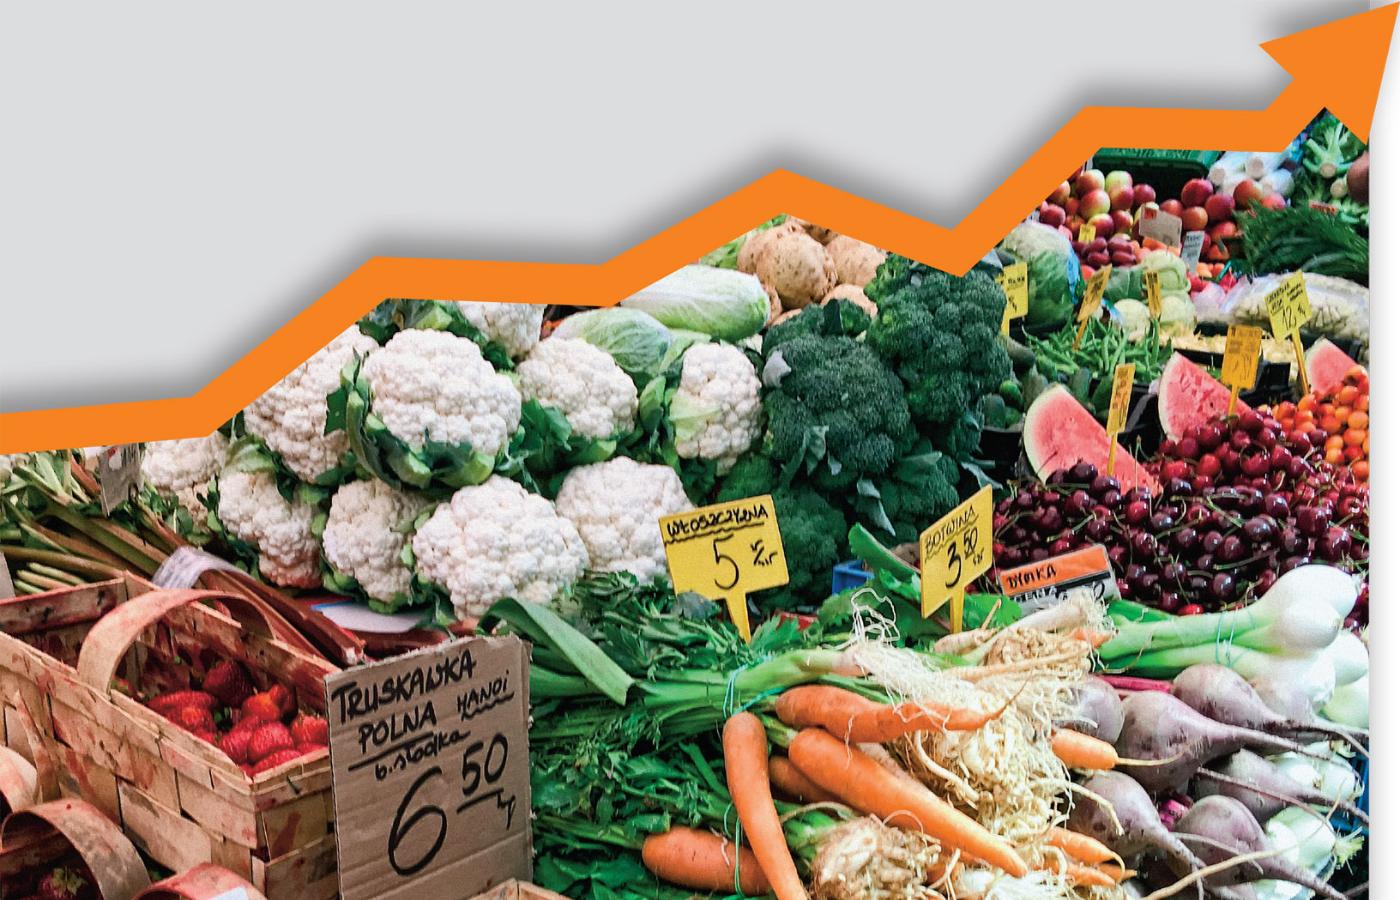 Wzrost cen niepokoi zarówno konsumentów, jak i rolników, którzy także przecież są konsumentami.